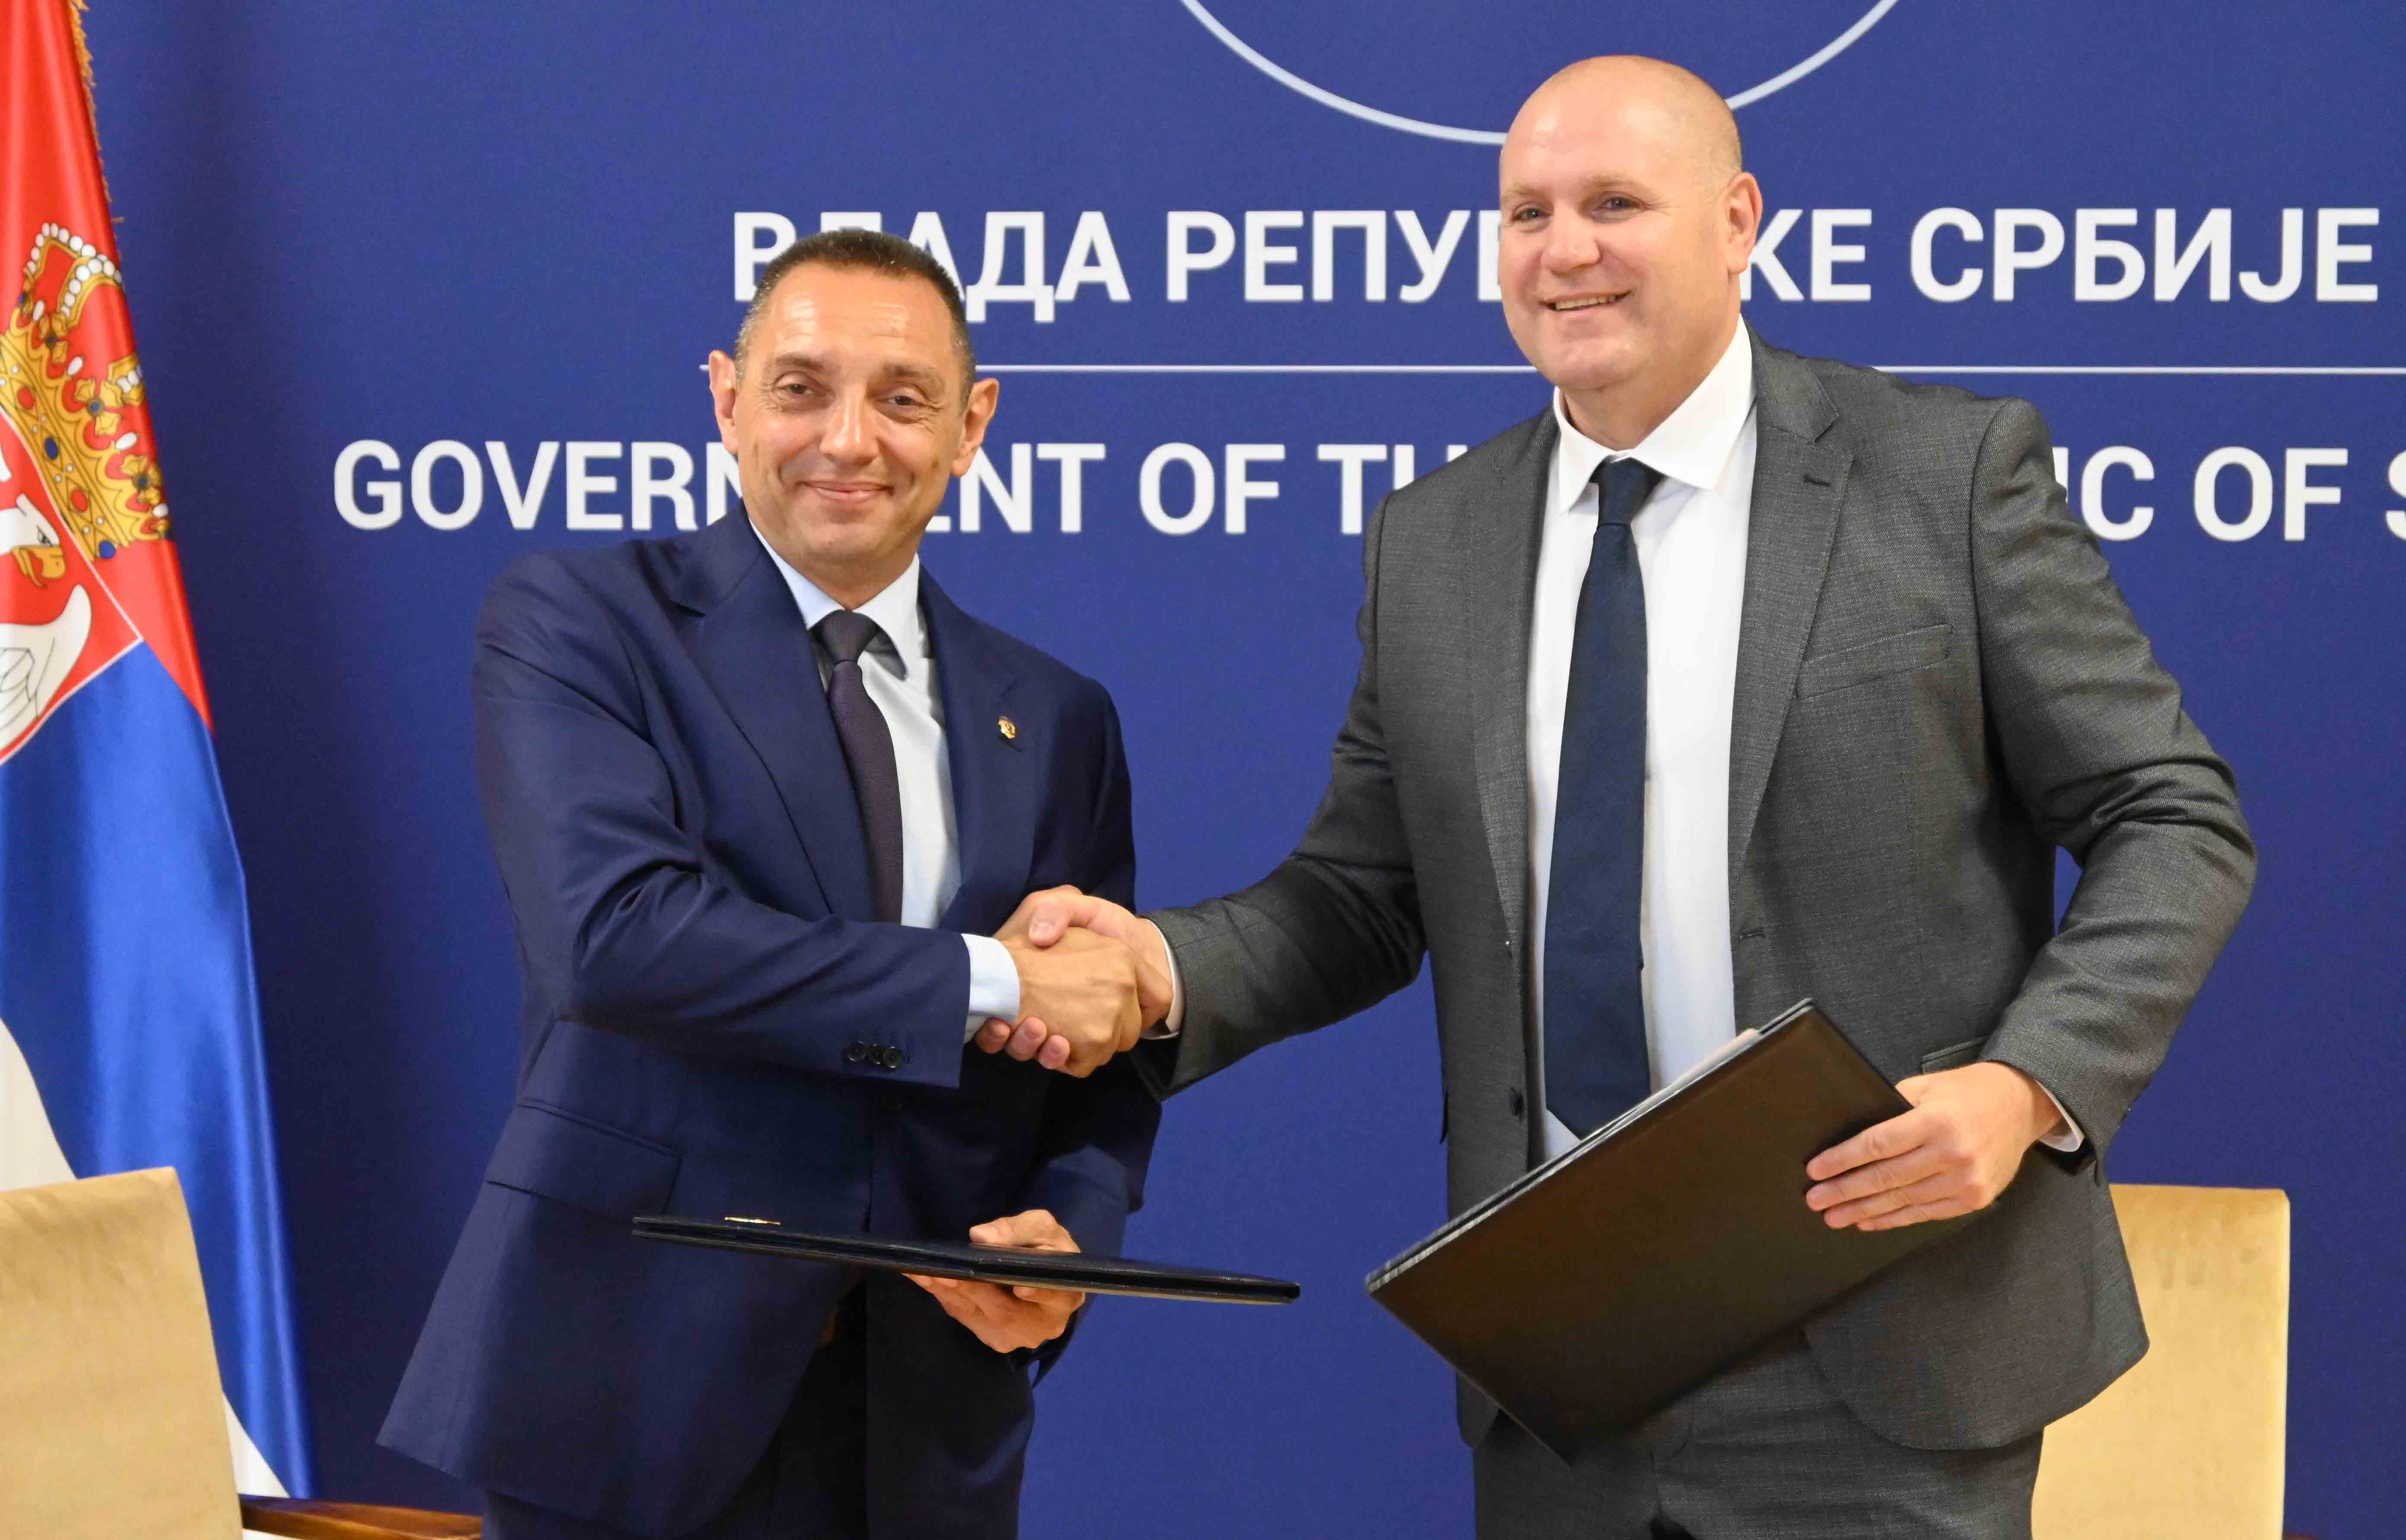 Ministar Aleksandar Vulin potpisao je sporazume o saradnji sa predstavnicima sportskih saveza